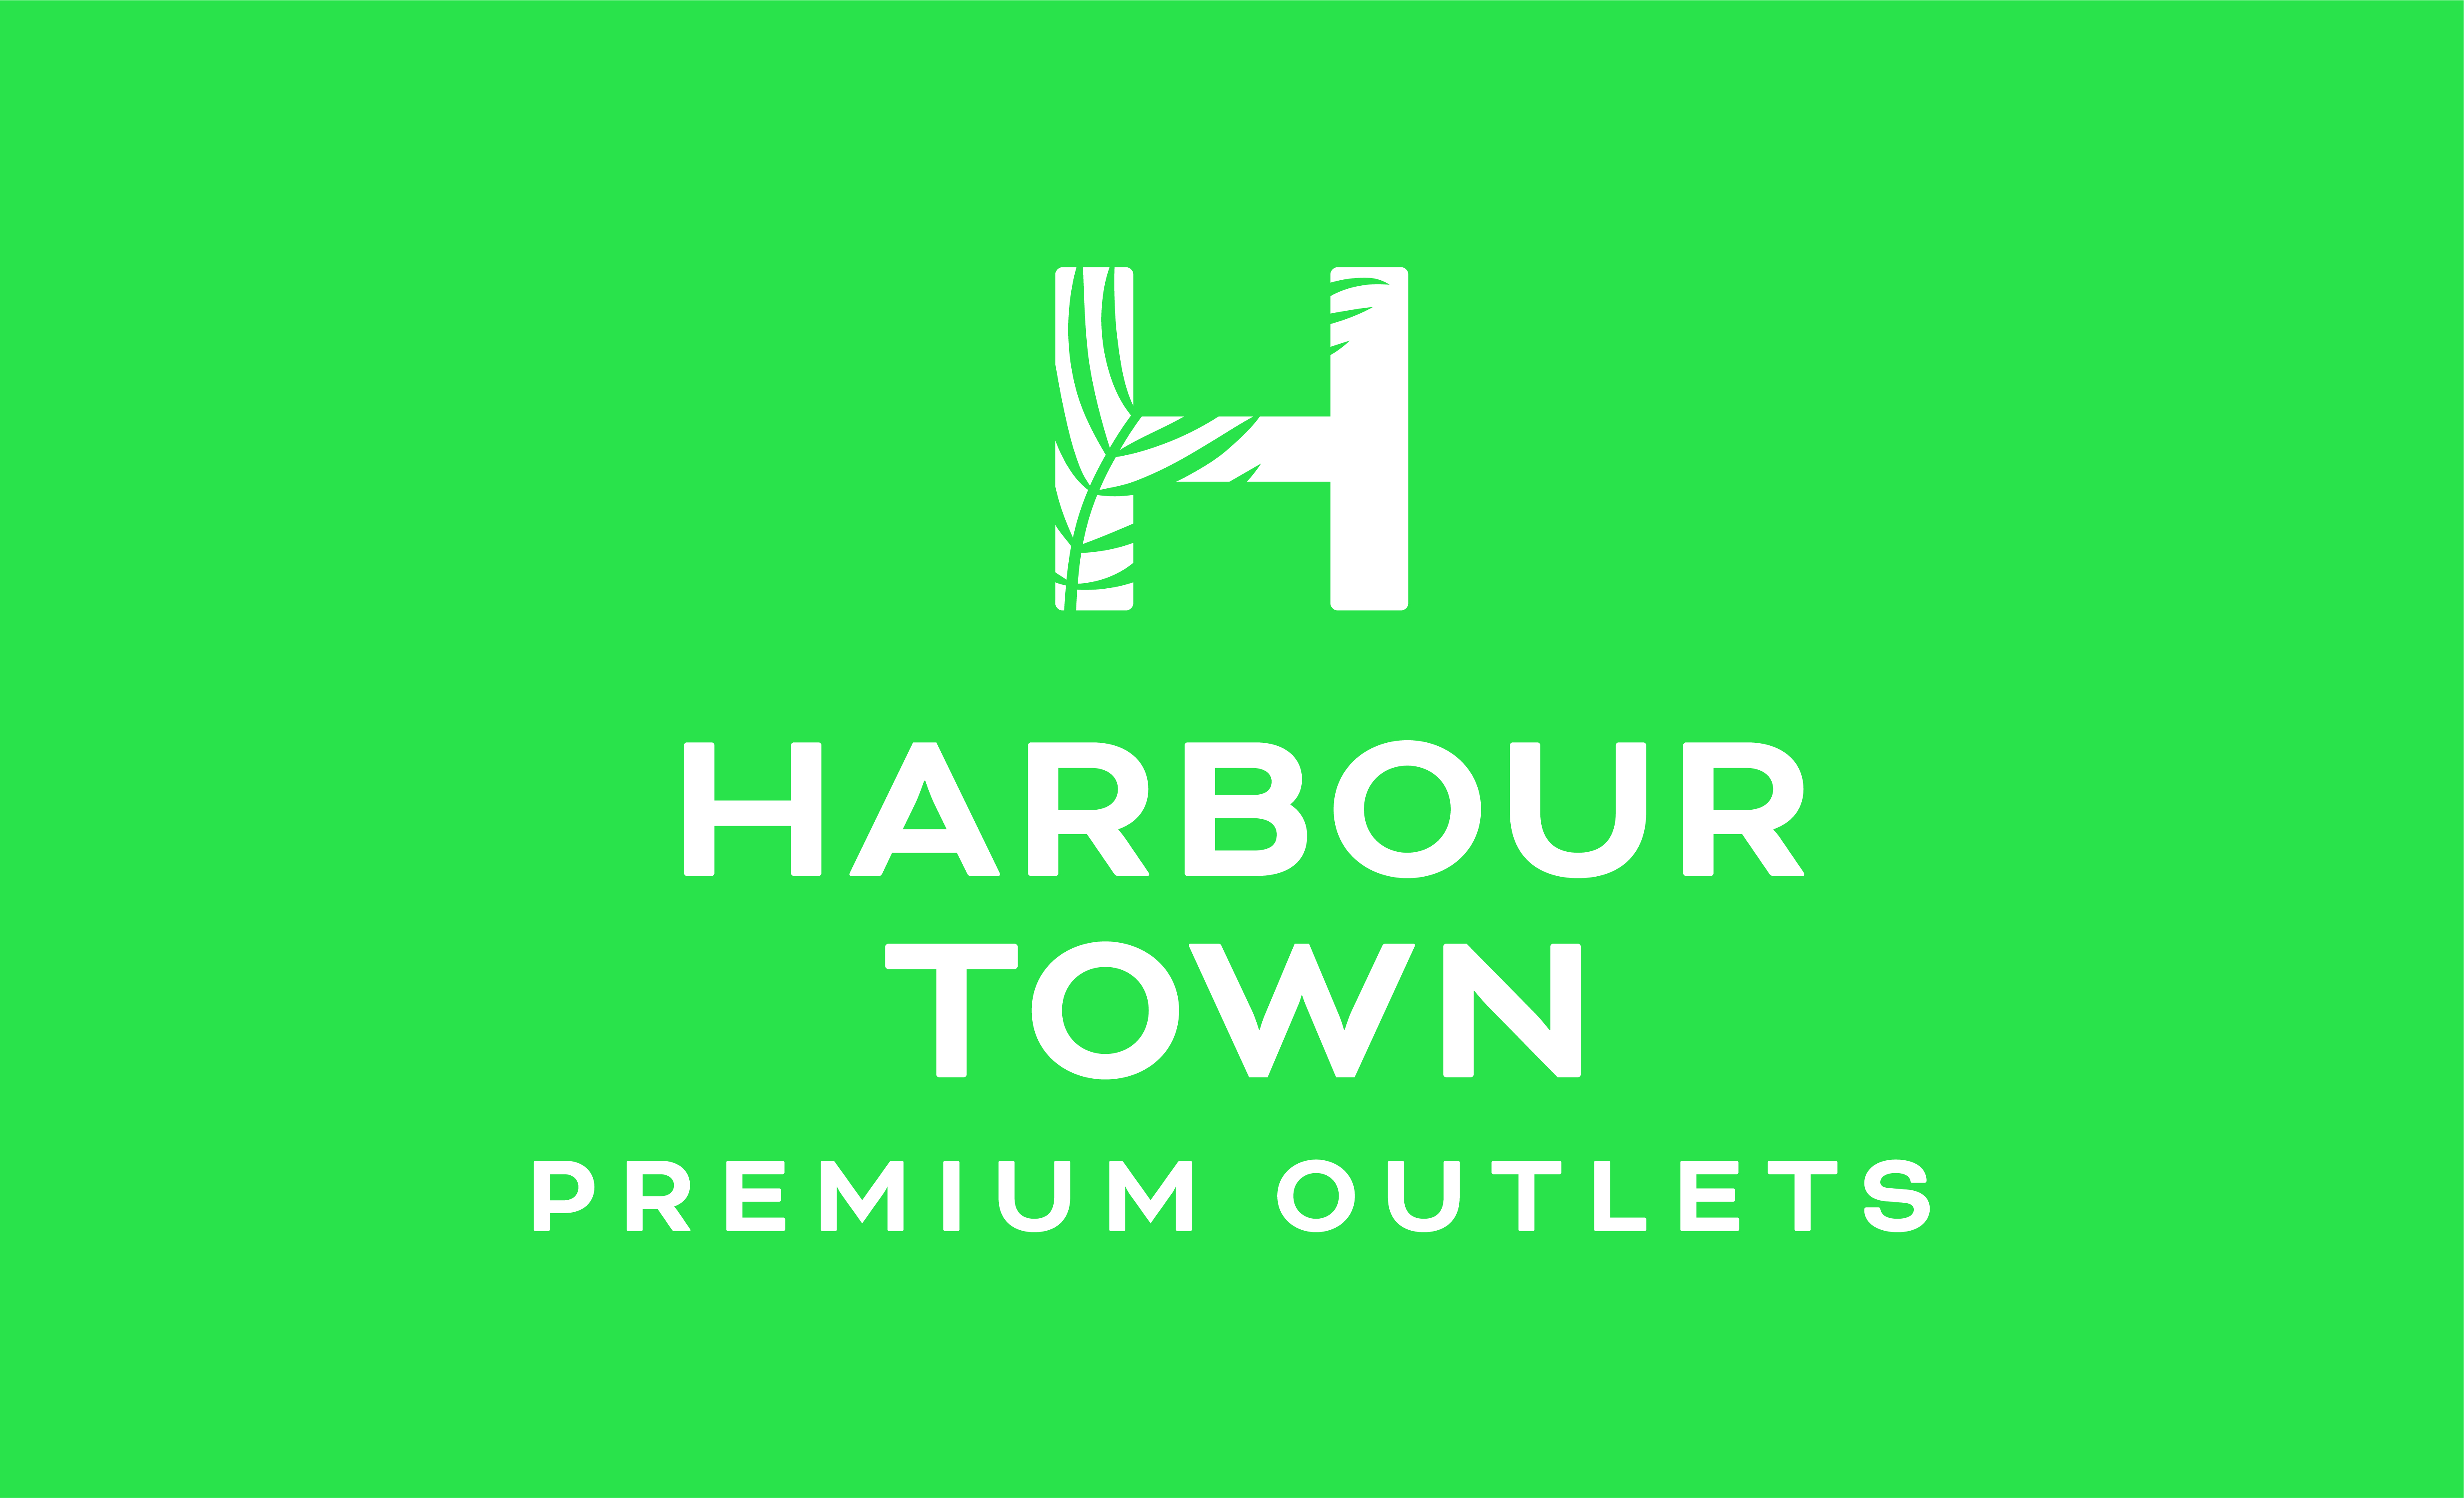 Harbour Town Premium Outlets Gold Coast
